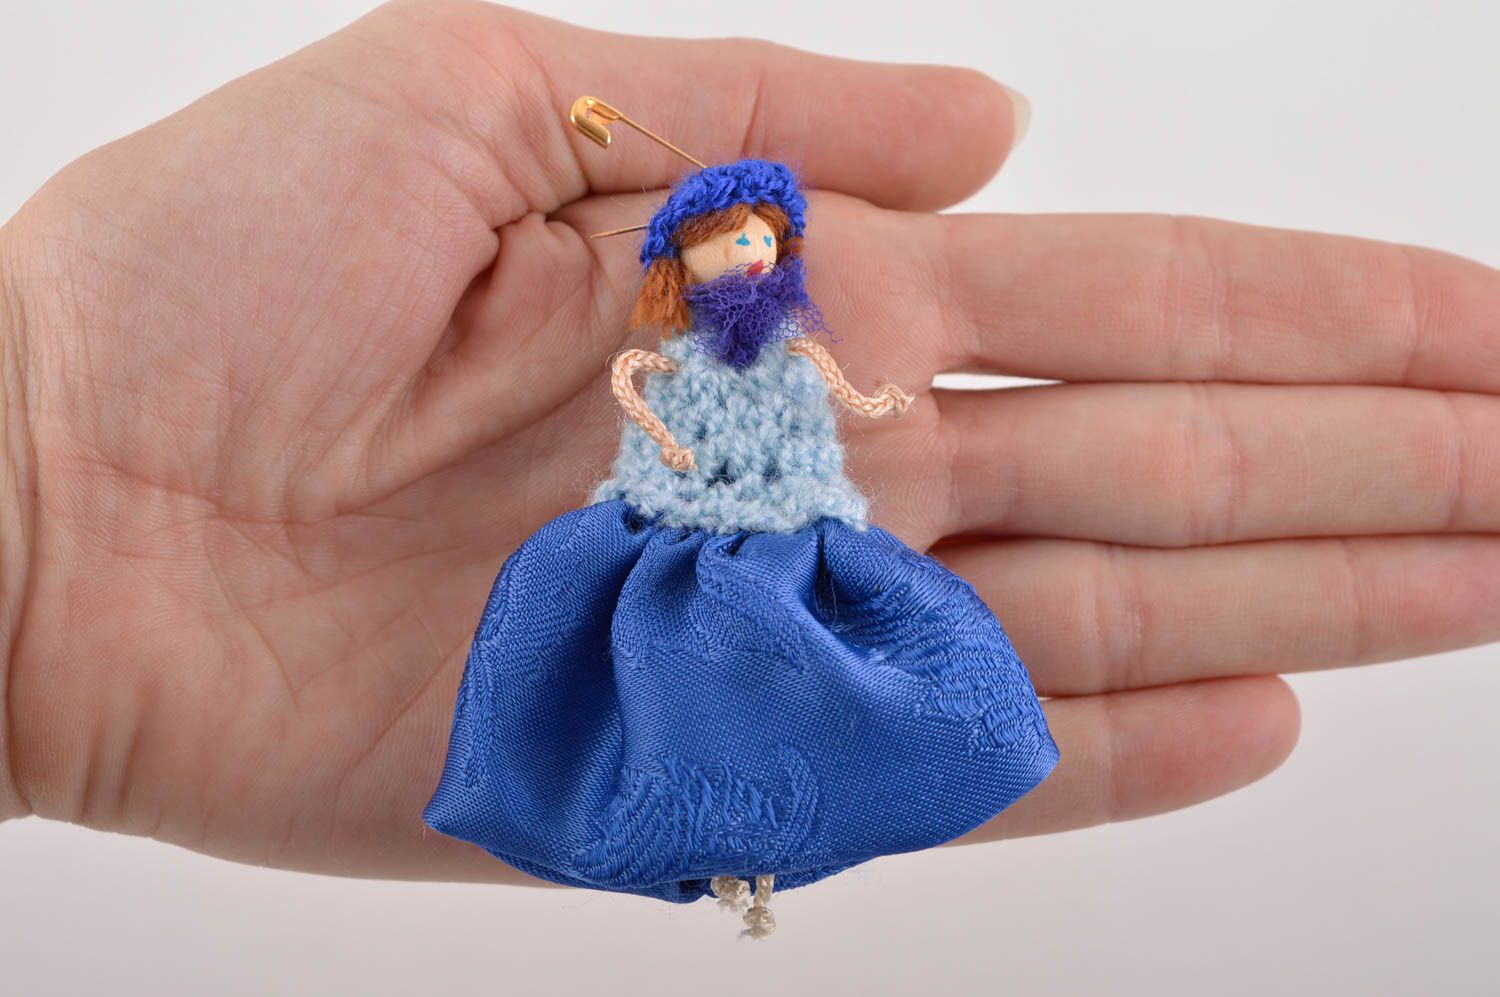 Брошь ручной работы текстильная брошь кукла авторское украшение из тканей фото 3